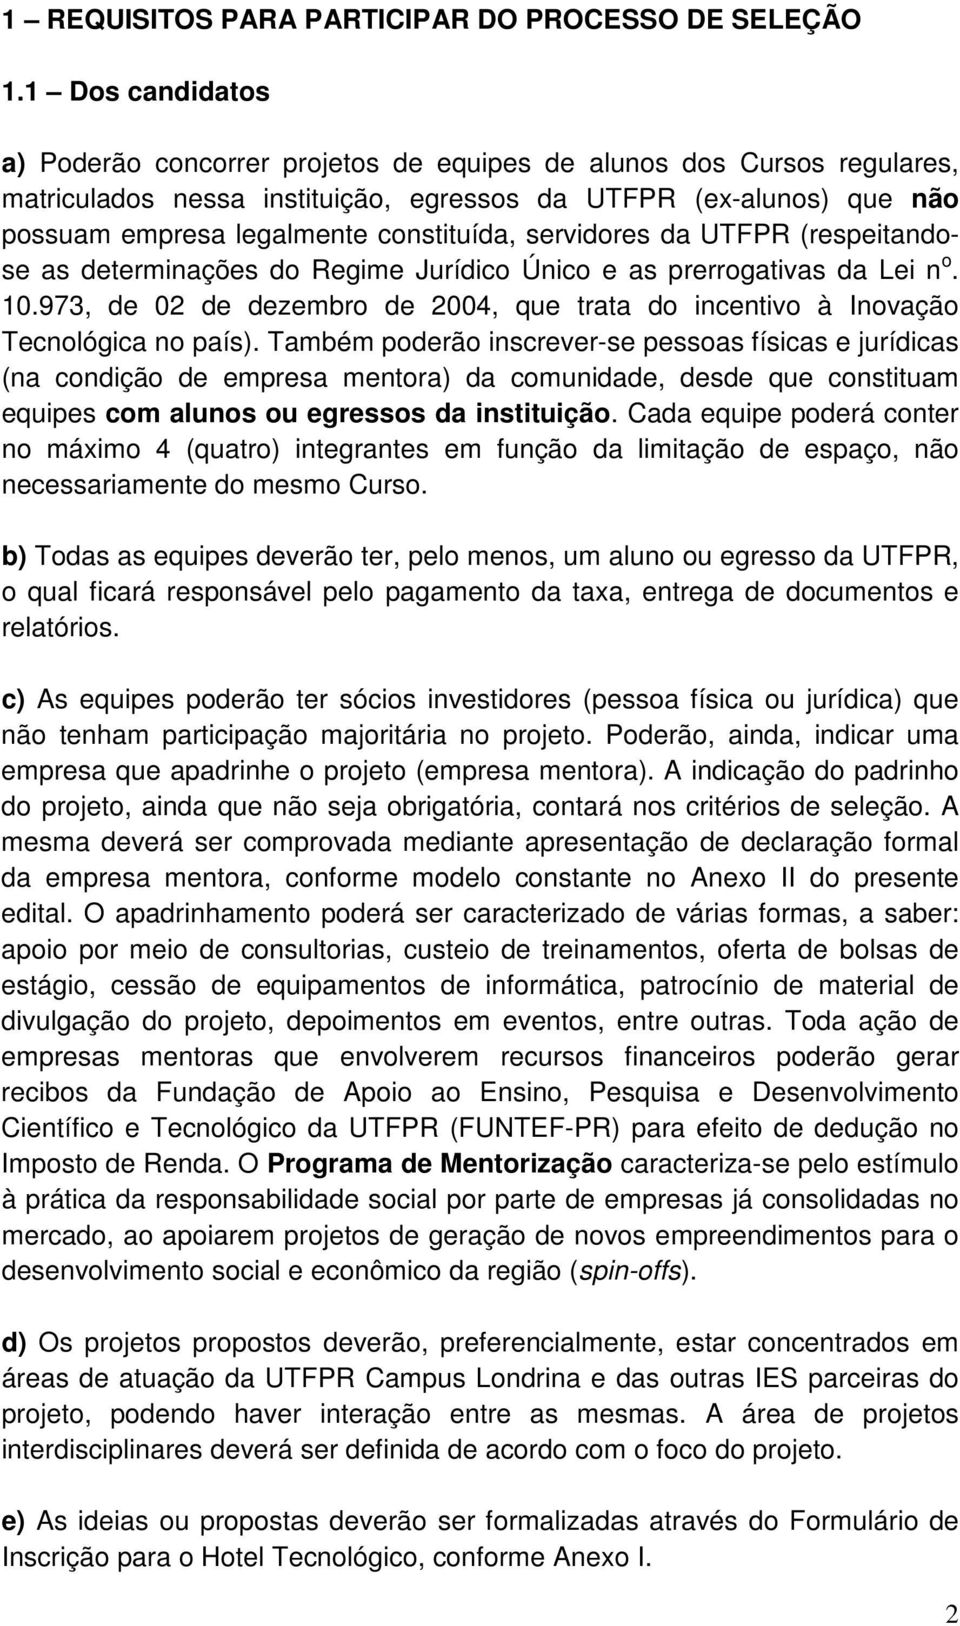 servidores da UTFPR (respeitandose as determinações do Regime Jurídico Único e as prerrogativas da Lei n o. 10.973, de 02 de dezembro de 2004, que trata do incentivo à Inovação Tecnológica no país).